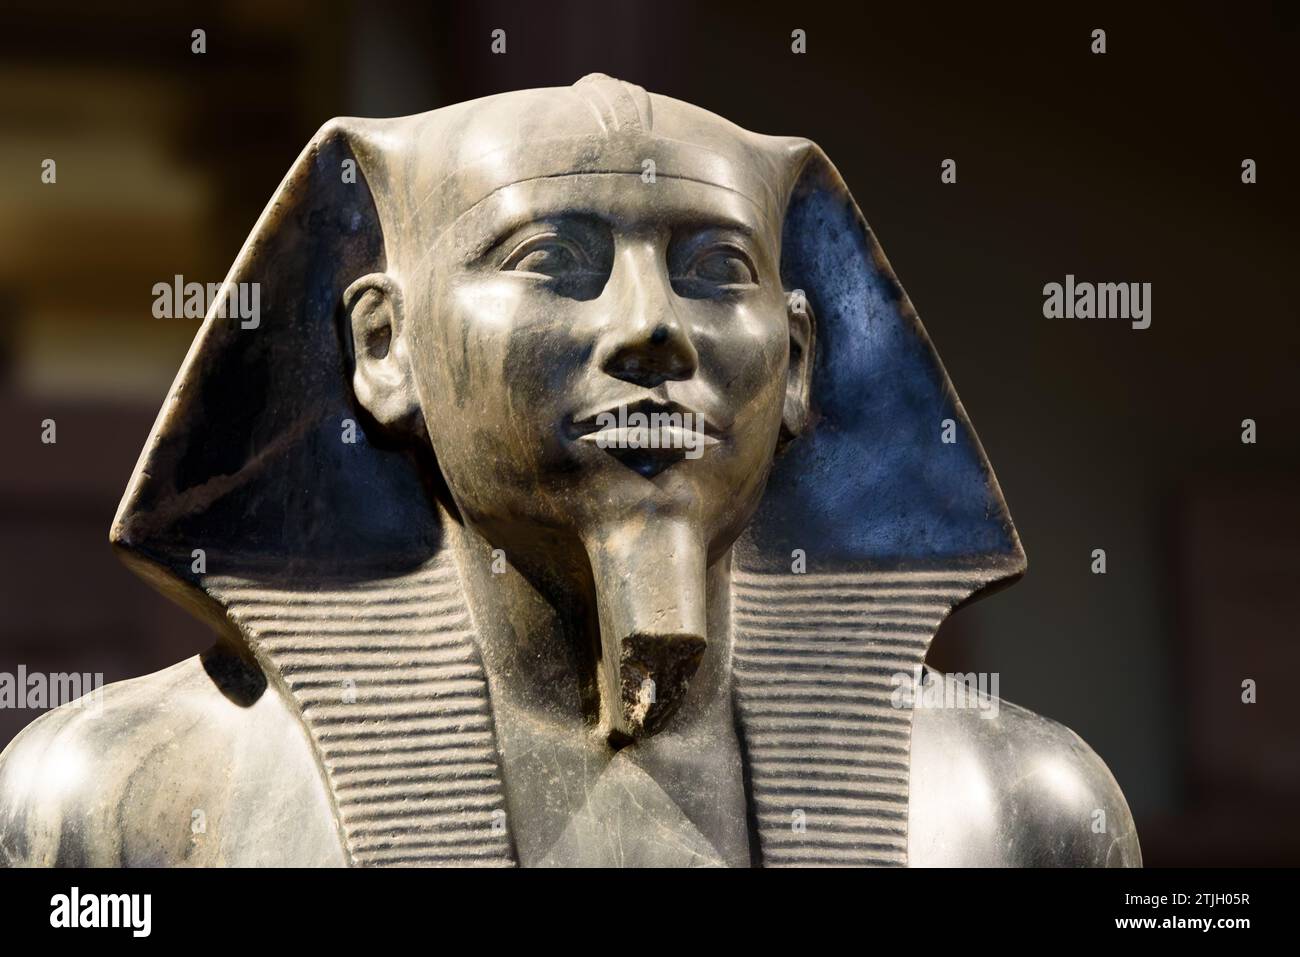 Statue von König Khafre. Diese Statue von König Khafre wurde in einer Grube unter seinem Taltempel in Gizeh entdeckt und ist eine der berühmtesten Skulpturen des alten Ägypten. Khafre war der Erbauer der zweiten Pyramide von Gizeh. Die Statue besteht aus Diorit, der in Tushki in der Nähe von Abu Simbel abgebaut wurde. Die Verwendung dieses Steins zeigt, dass sich die Macht von Khafre bis in den Süden des Landes erstreckte. 4. Dynastie, etwa 2520 - 2494 v. Chr. Ägyptisches Museum, Kairo, Ägypten. Stockfoto